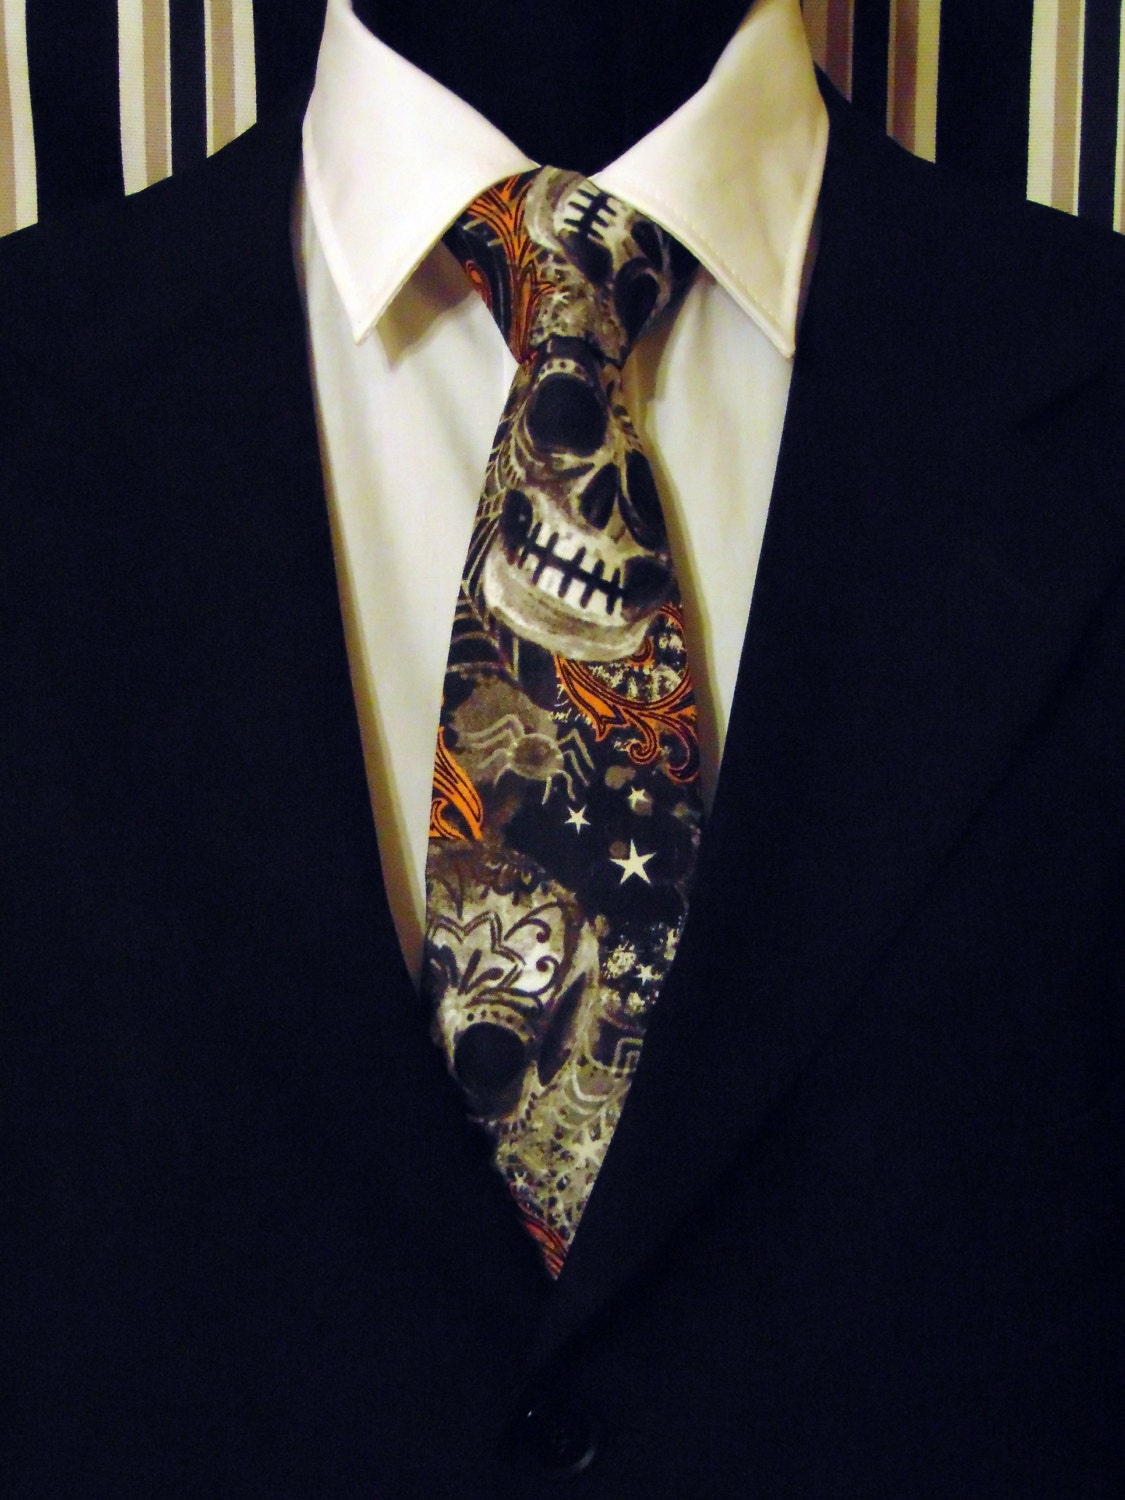 Halloween Necktie, Halloween Tie, Skull Necktie, Skull Tie, Black ...